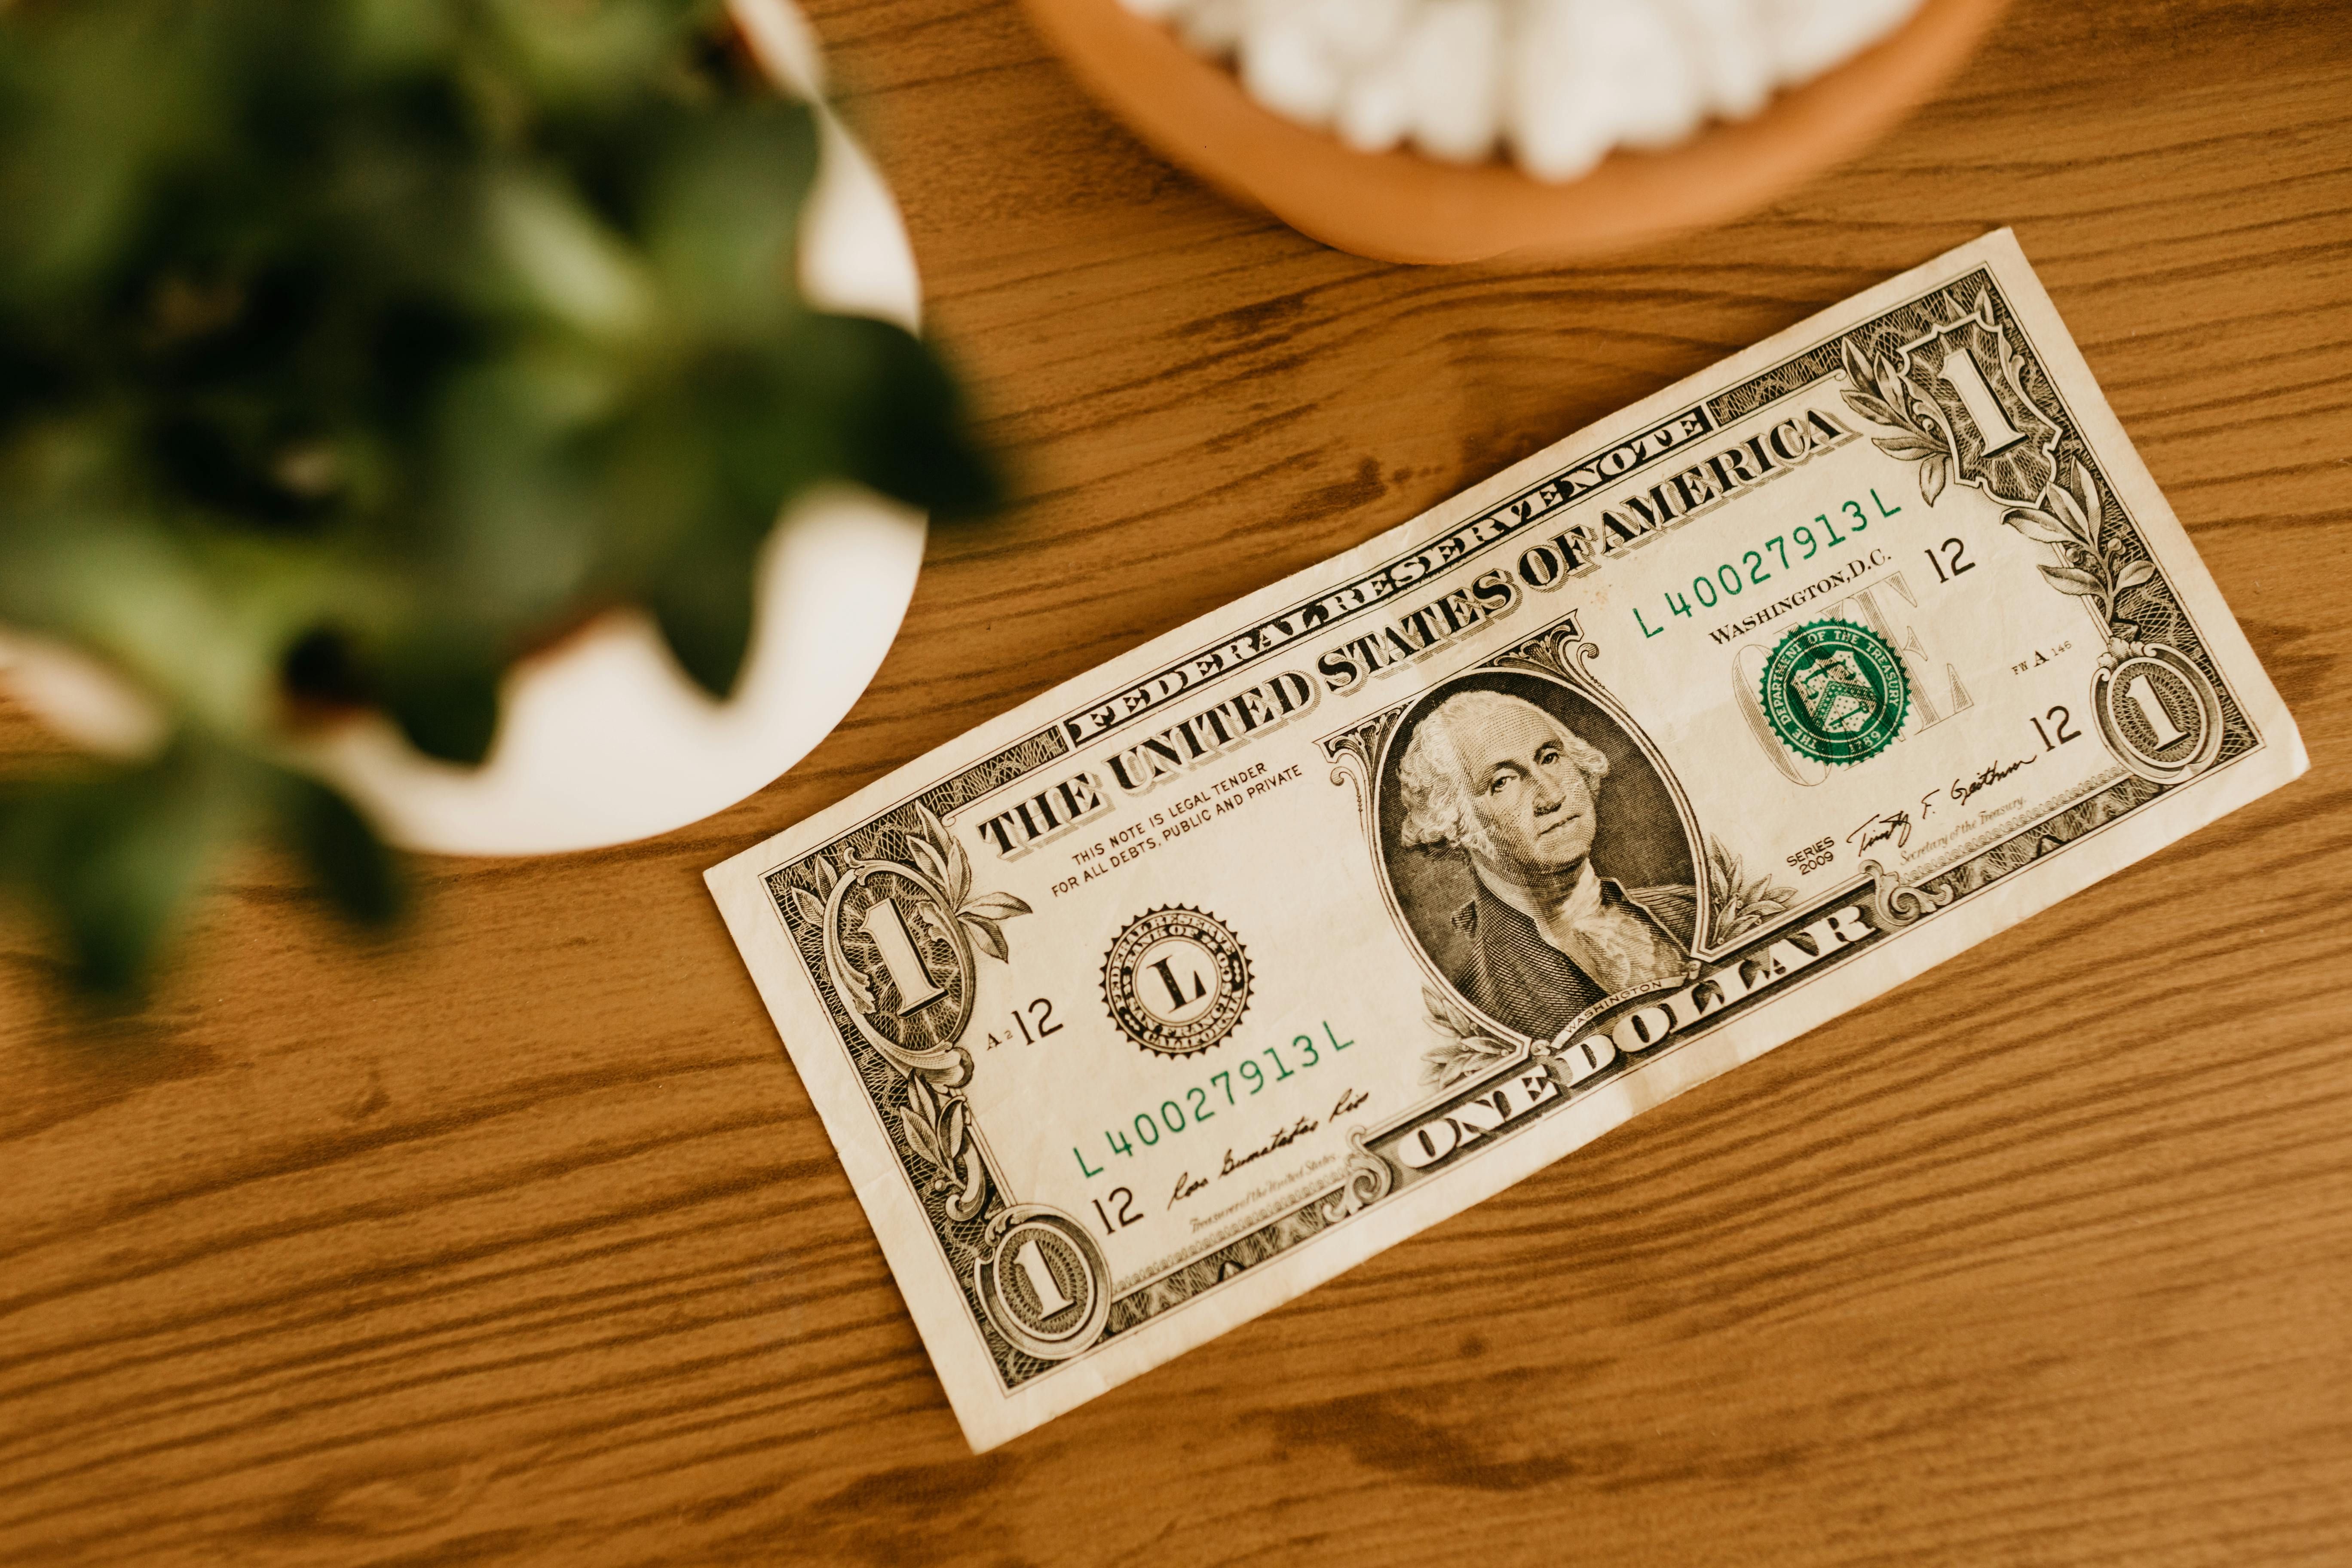 Сколько стоит доллар 5 марта - официальный курс от НБУ - как подорожали валюты